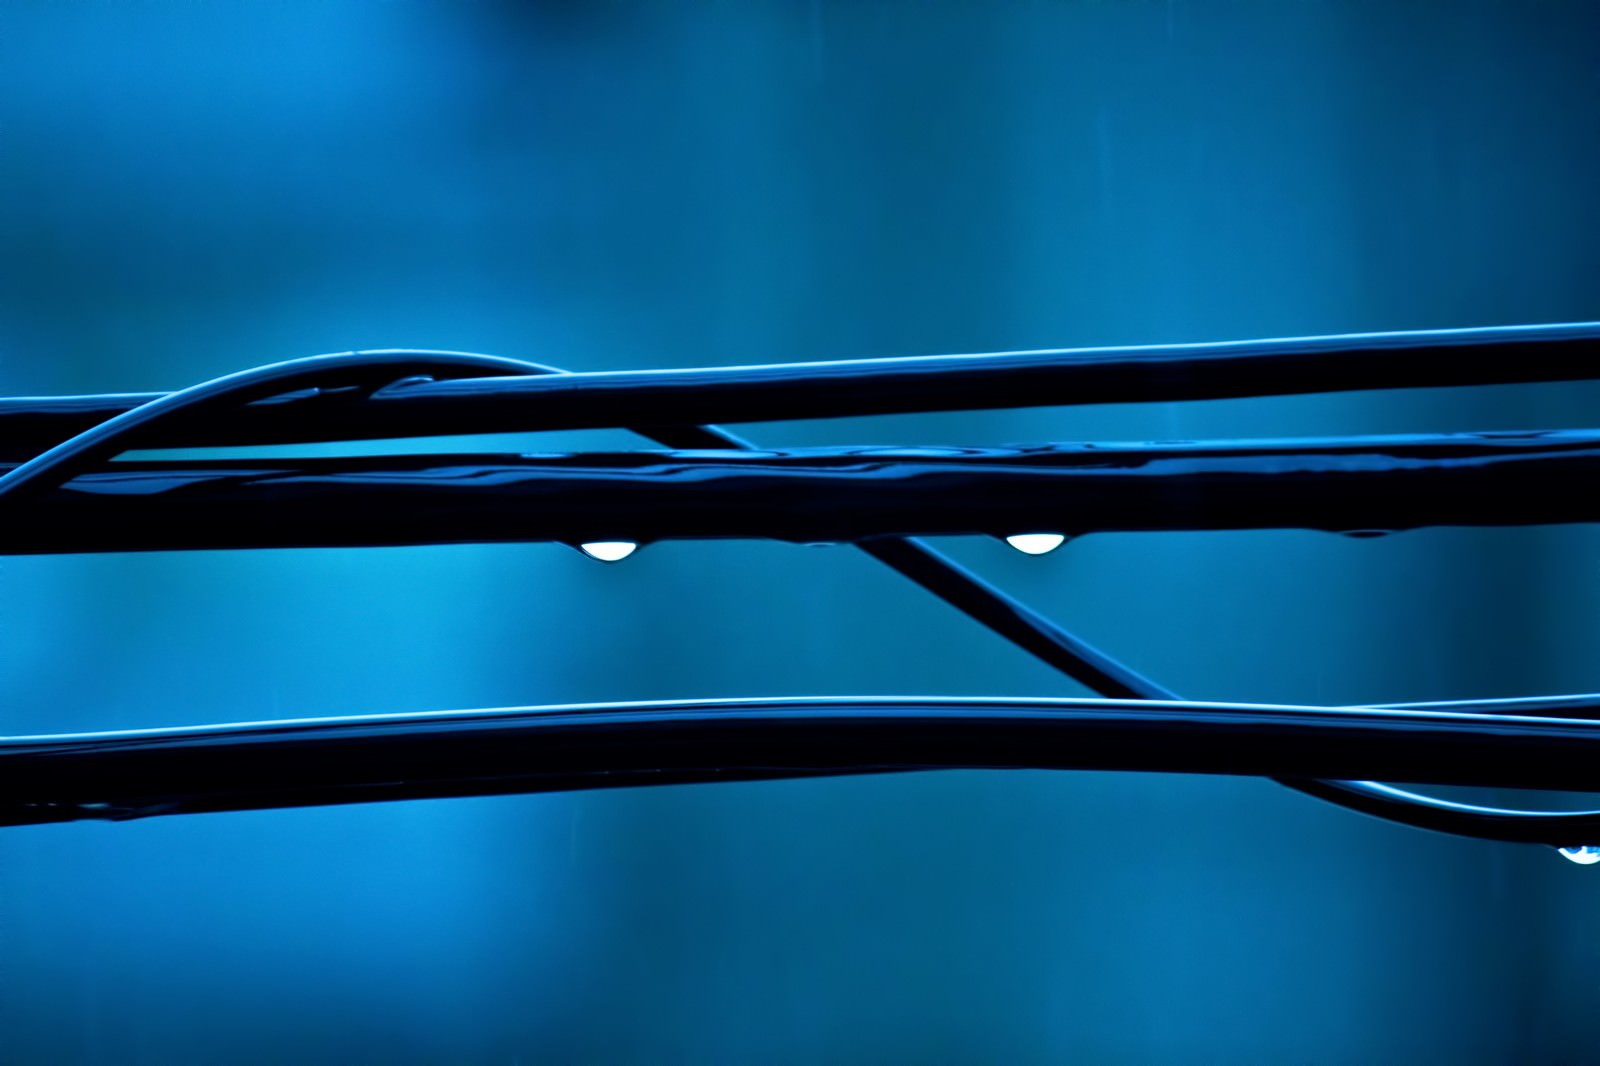 「雨水が滴る電線」の写真